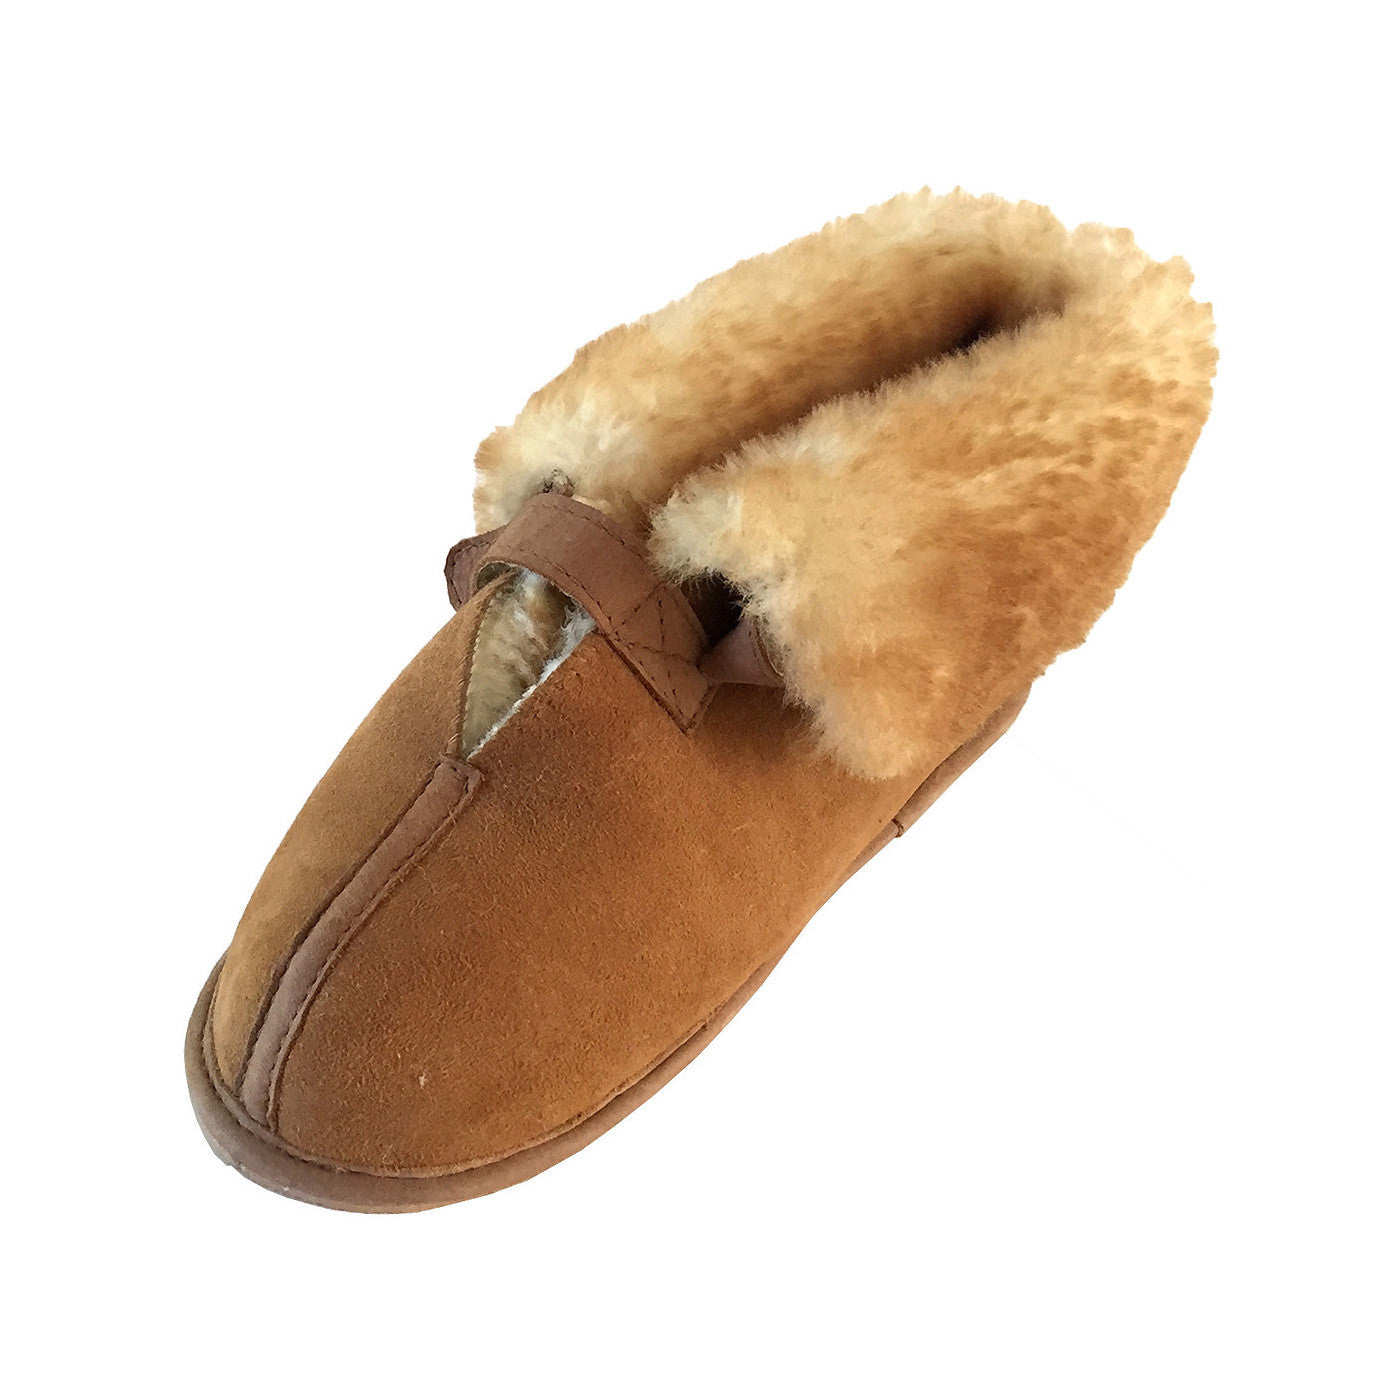 sheepskin velcro slippers